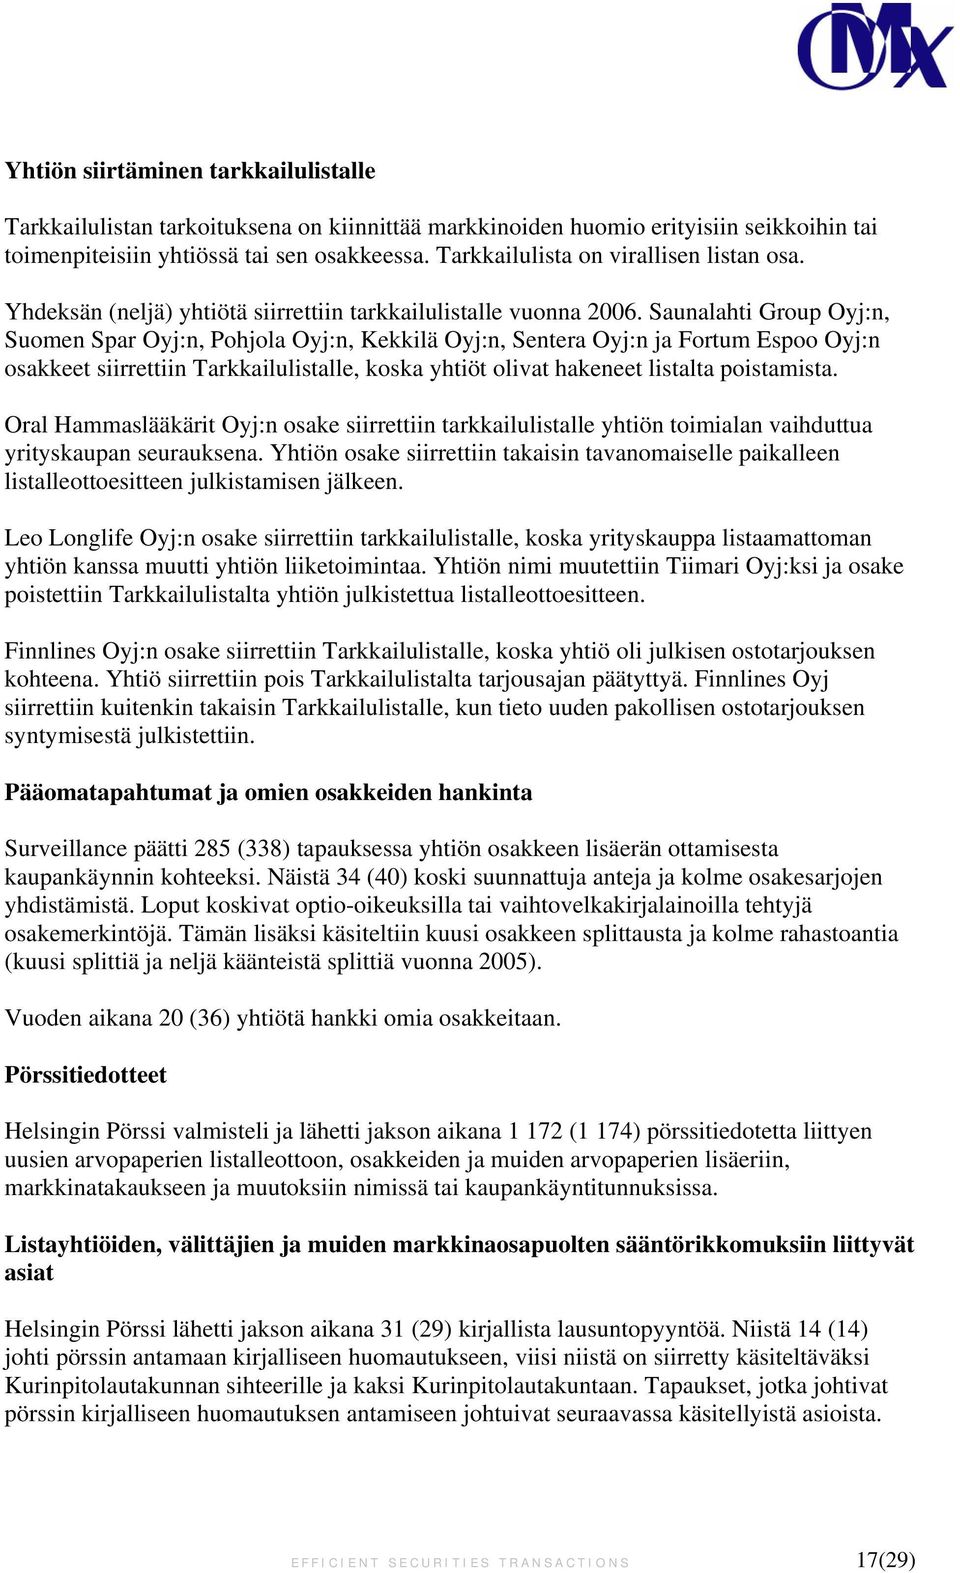 Saunalahti Group Oyj:n, Suomen Spar Oyj:n, Pohjola Oyj:n, Kekkilä Oyj:n, Sentera Oyj:n ja Fortum Espoo Oyj:n osakkeet siirrettiin Tarkkailulistalle, koska yhtiöt olivat hakeneet listalta poistamista.